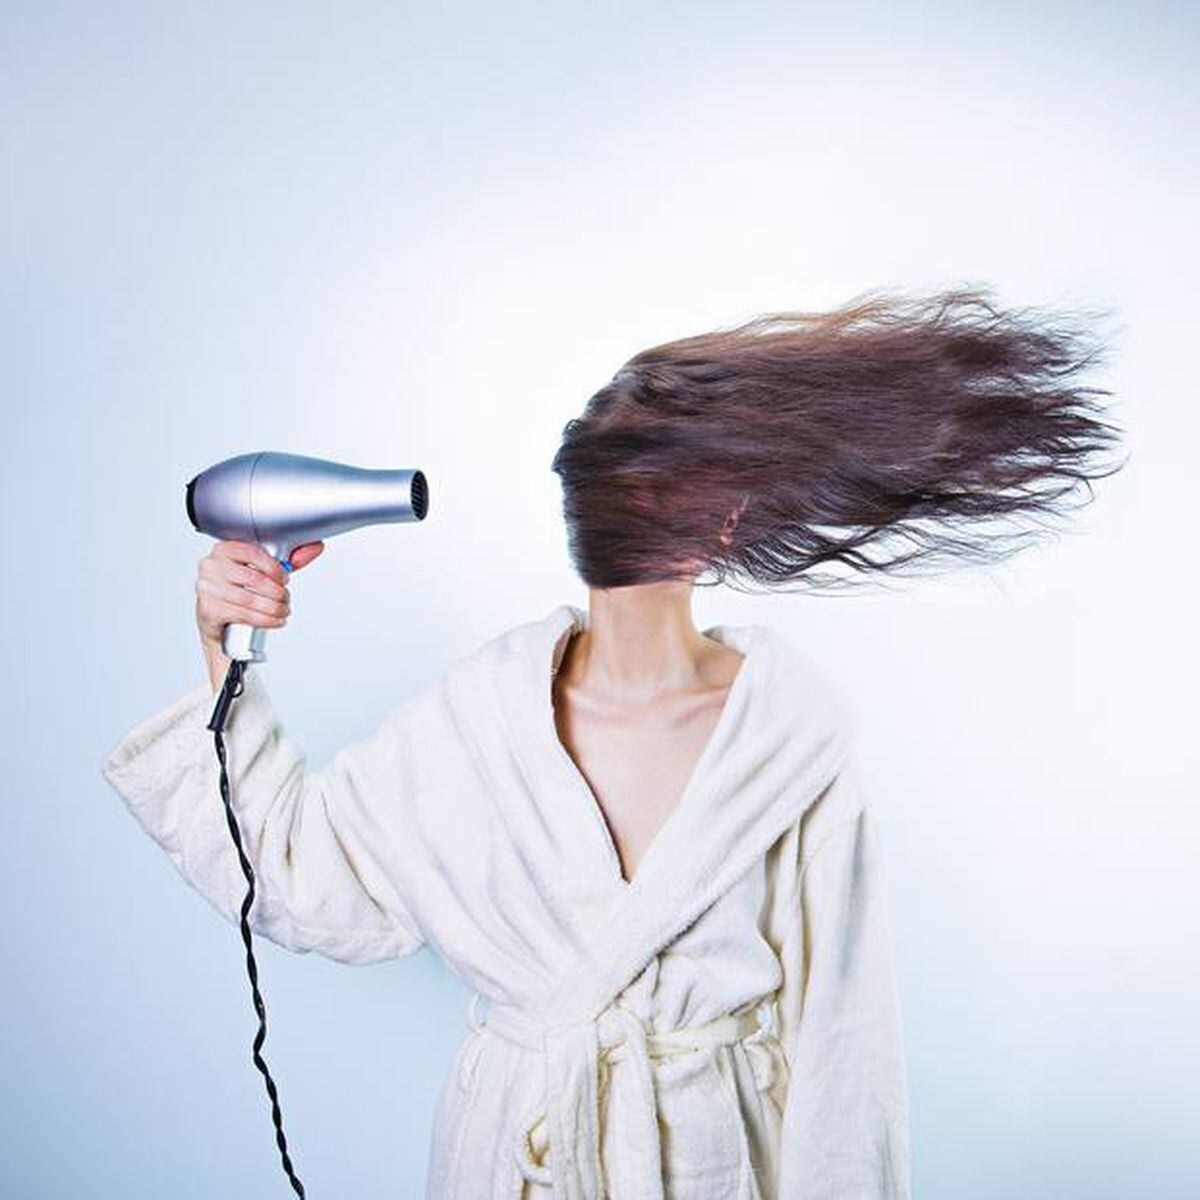 acidente com secador de cabelo